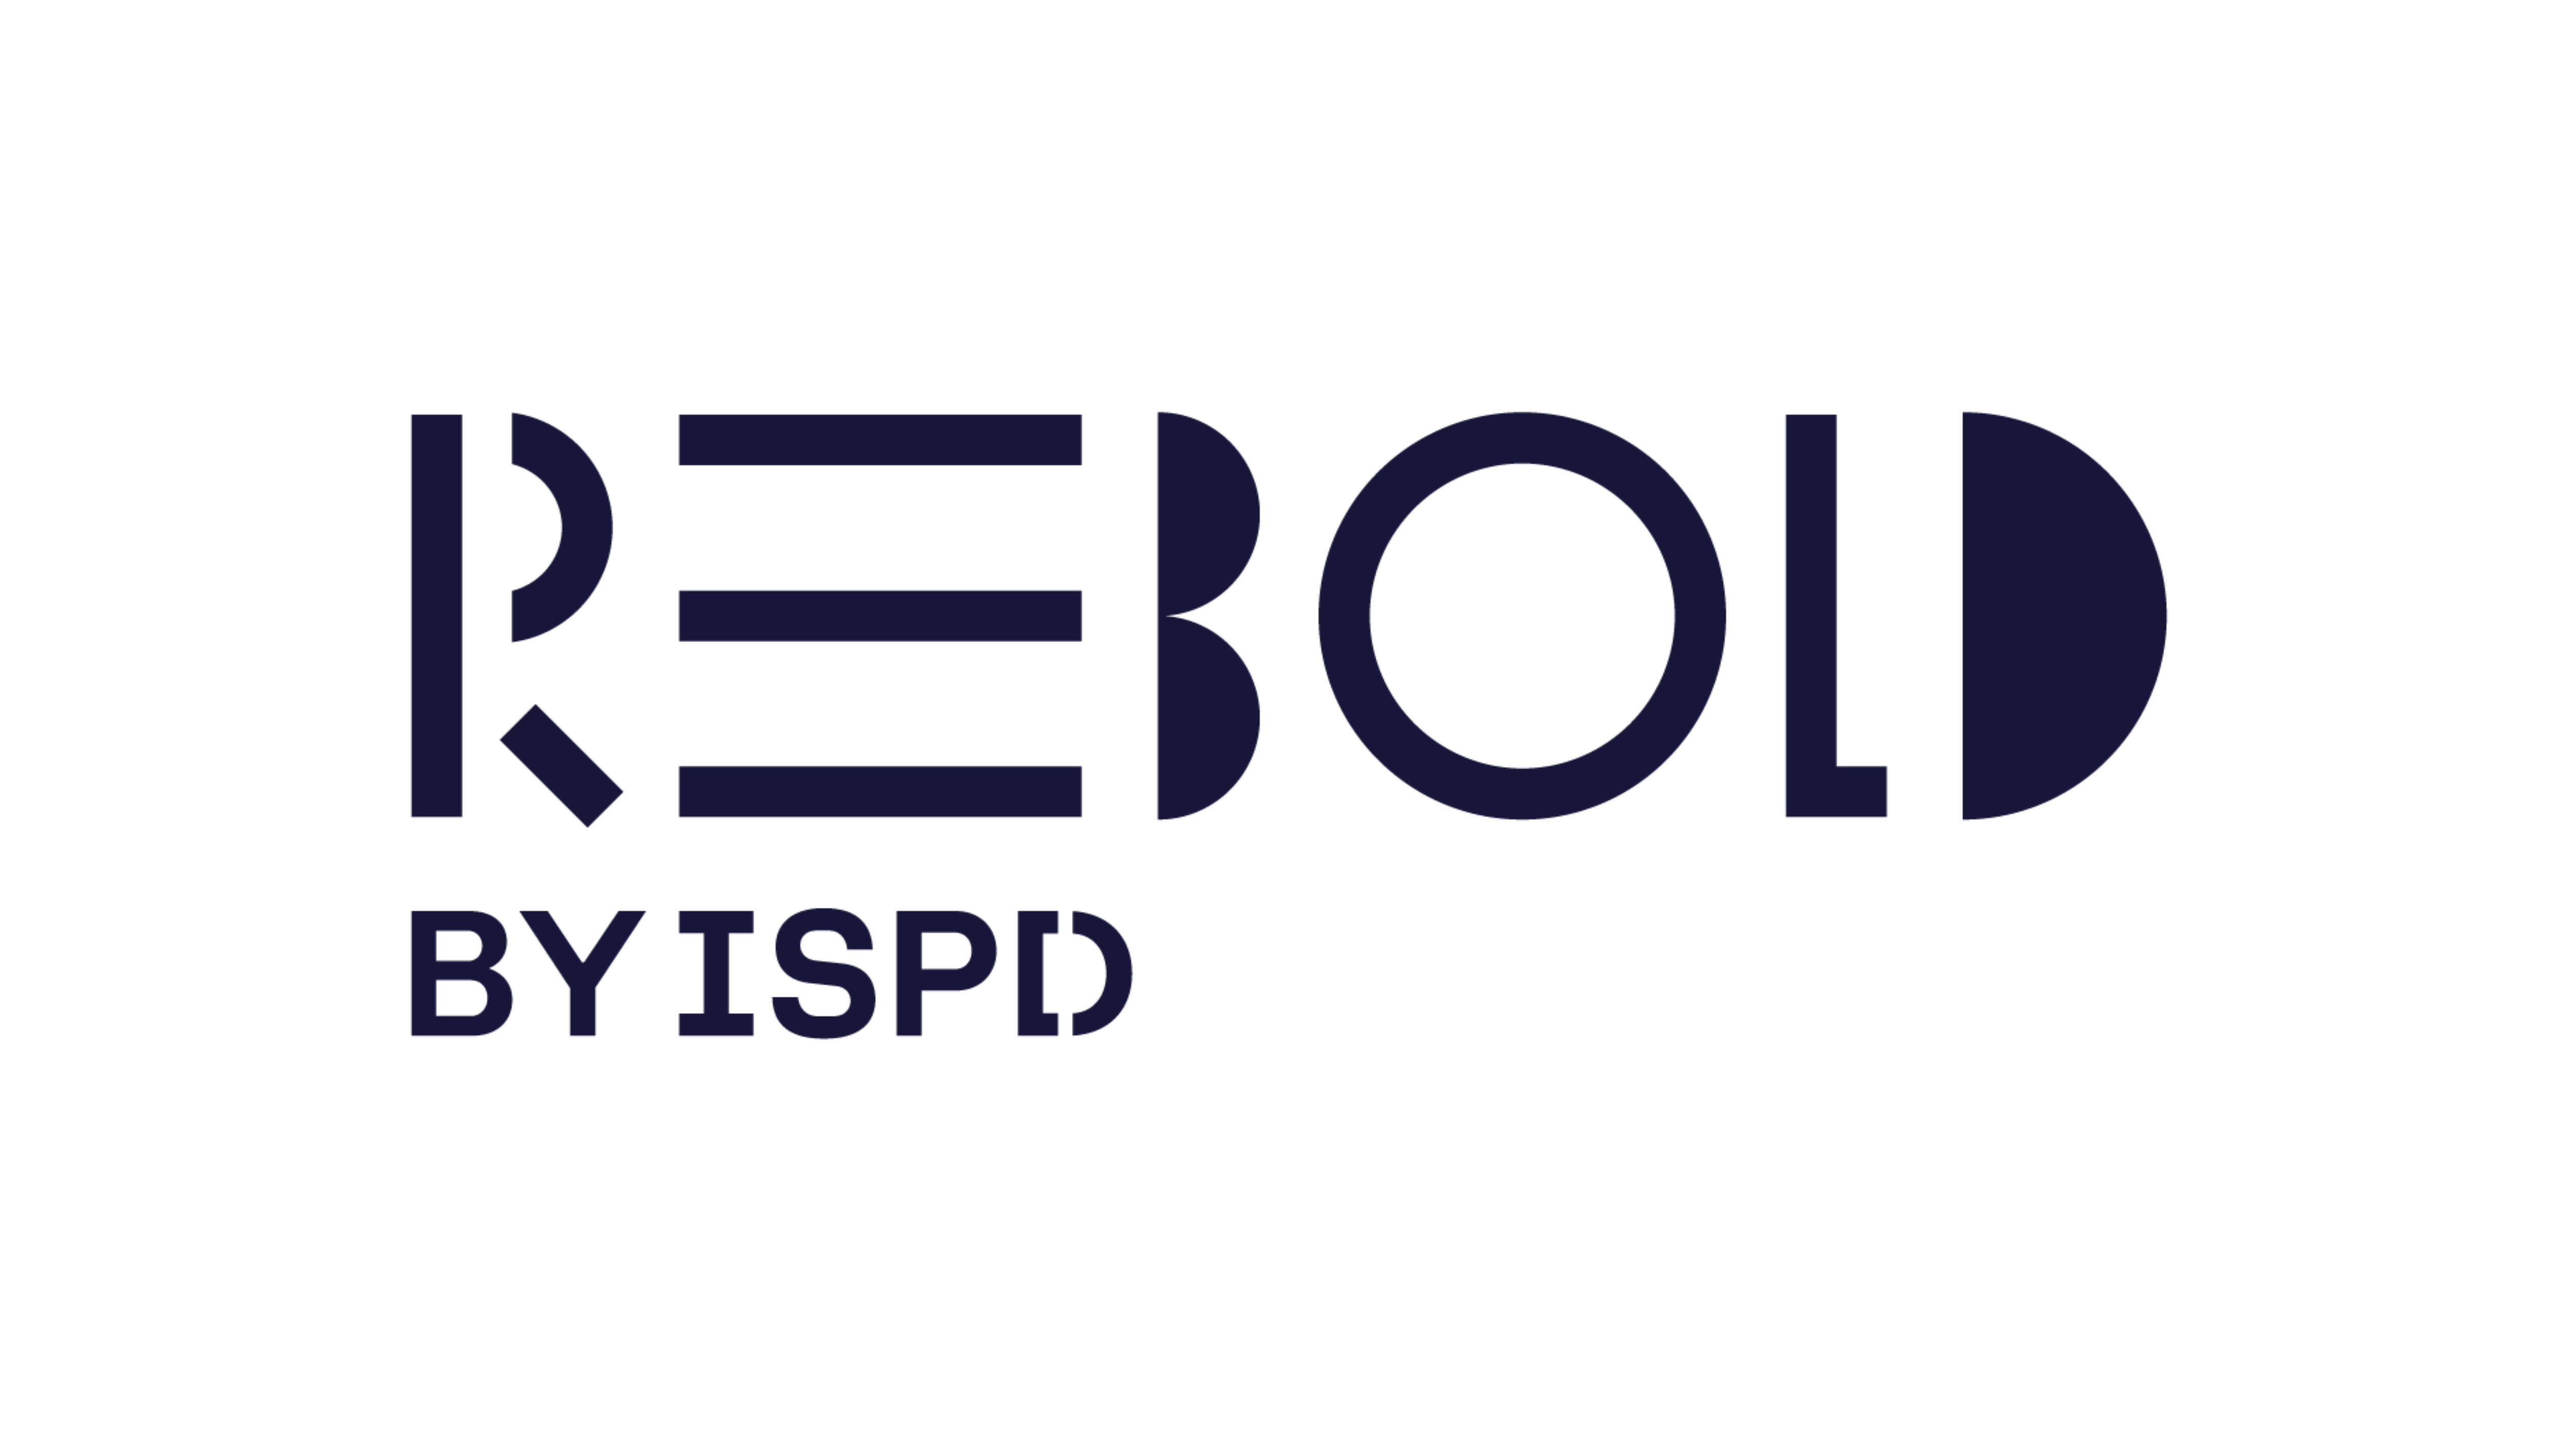 Logotipo de Rebold